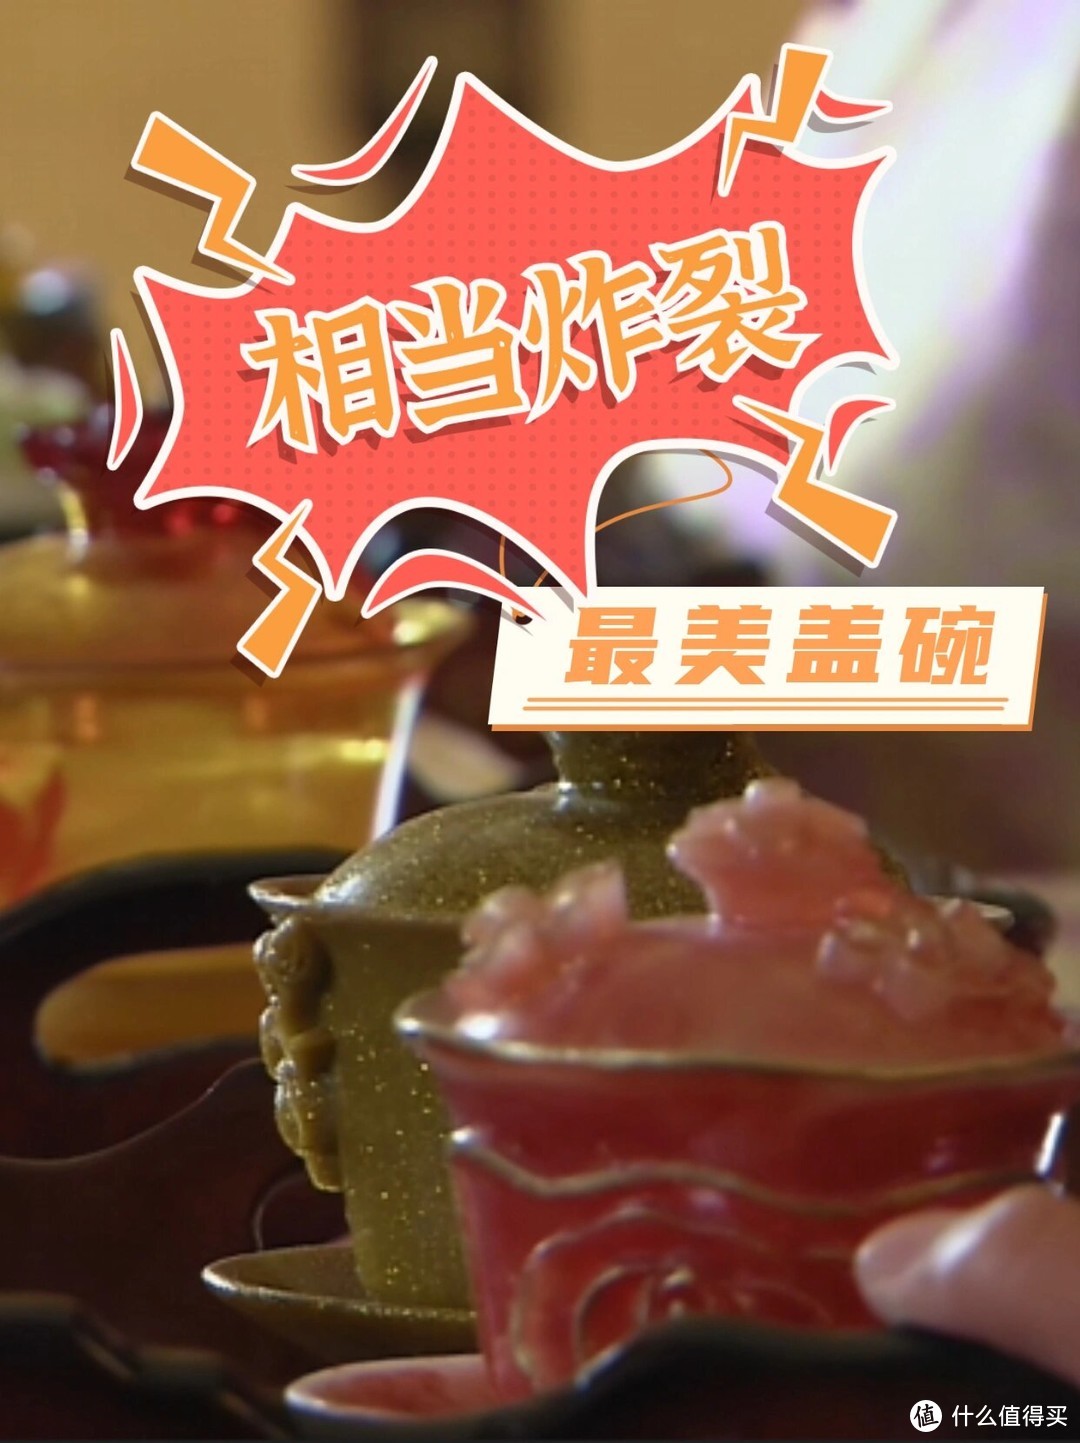 四川茶博会 相当炸裂 《步步惊心》中最美的盖碗来了！